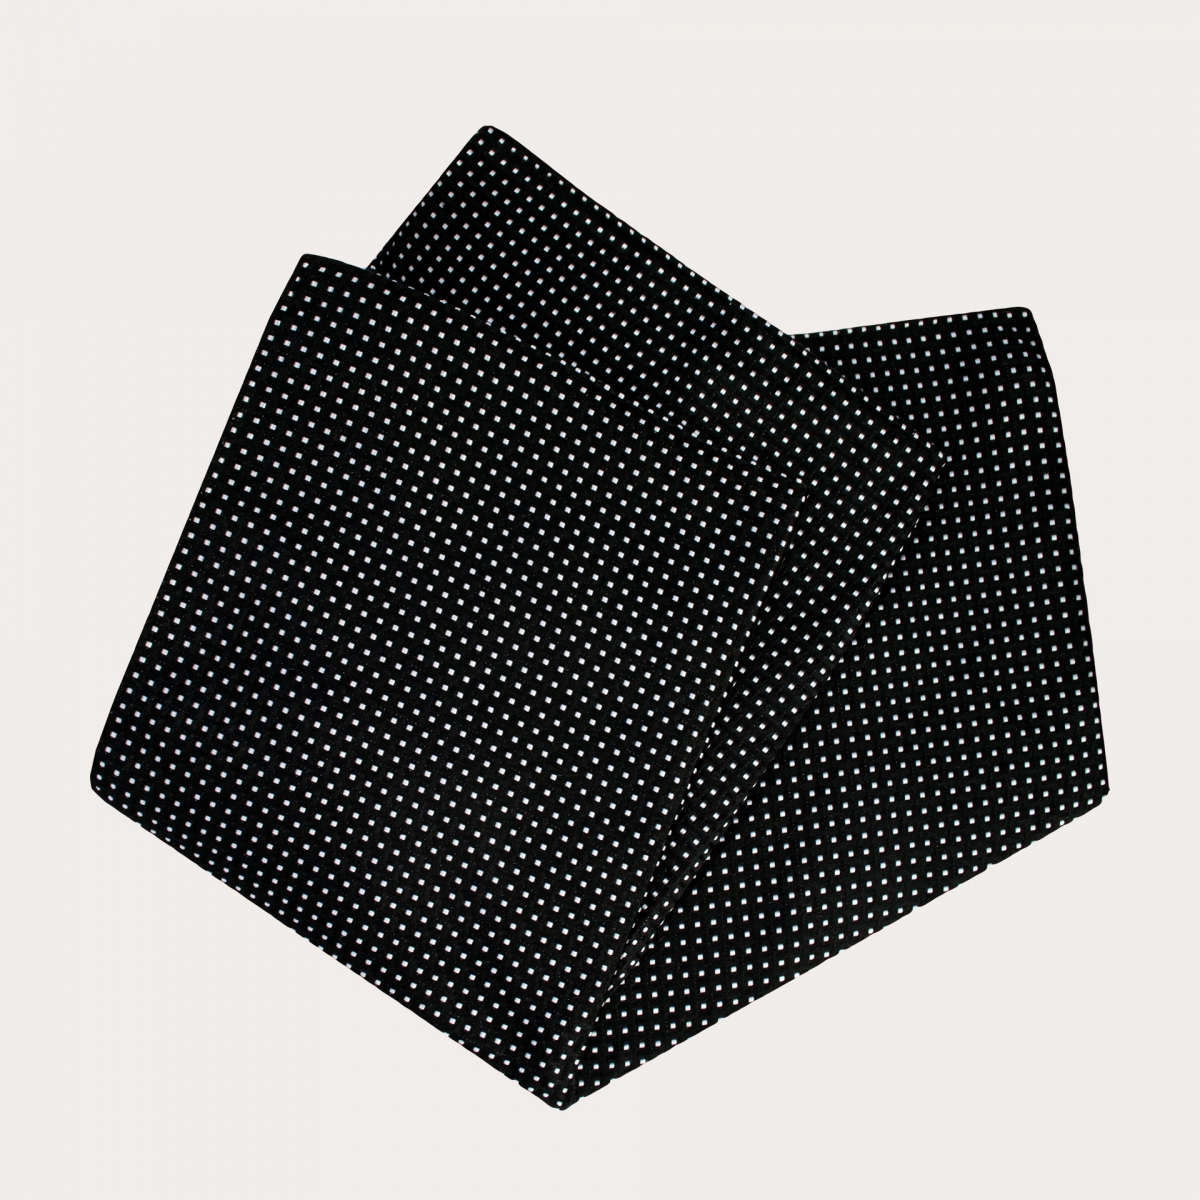 BRUCLE Conjunto completo de noche en elegante jacquard de seda negra con dibujo geométrico